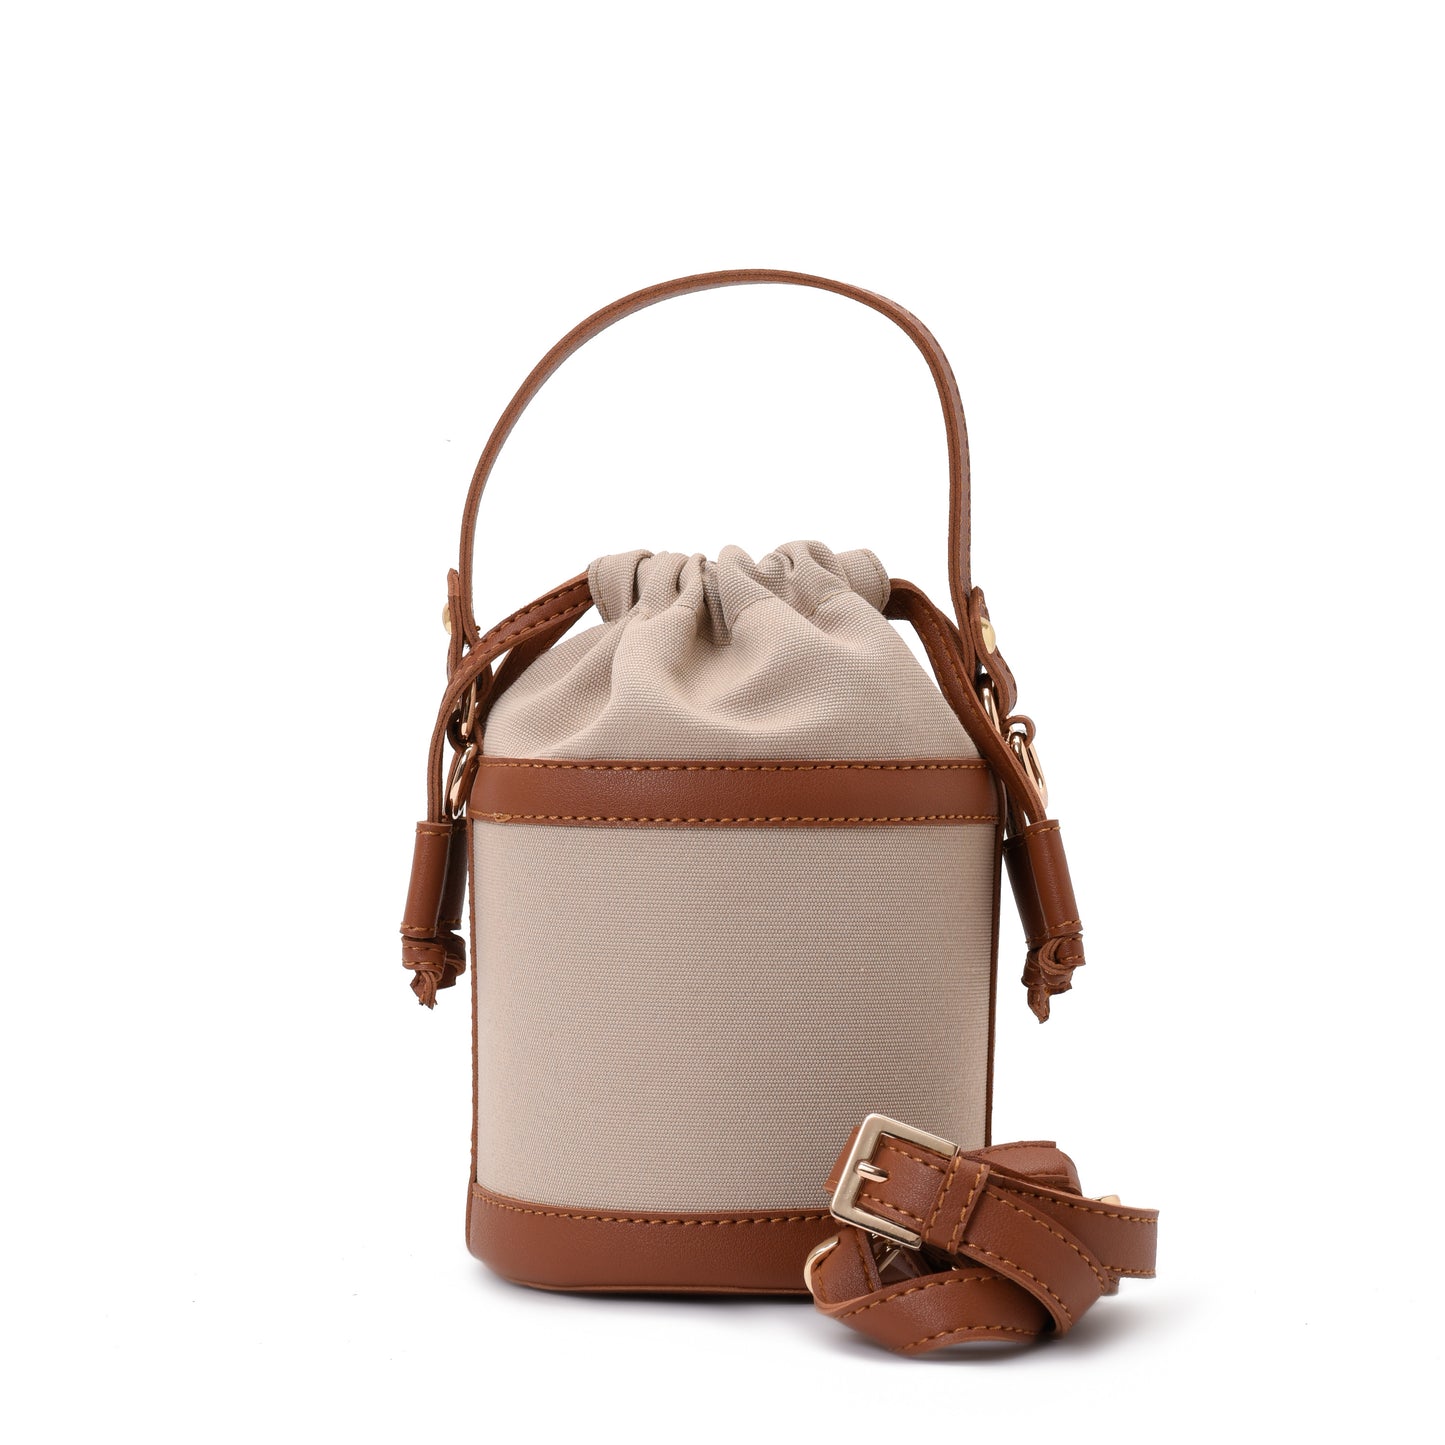 Retro bucket Beige Handbag with Brown belt -Code 910